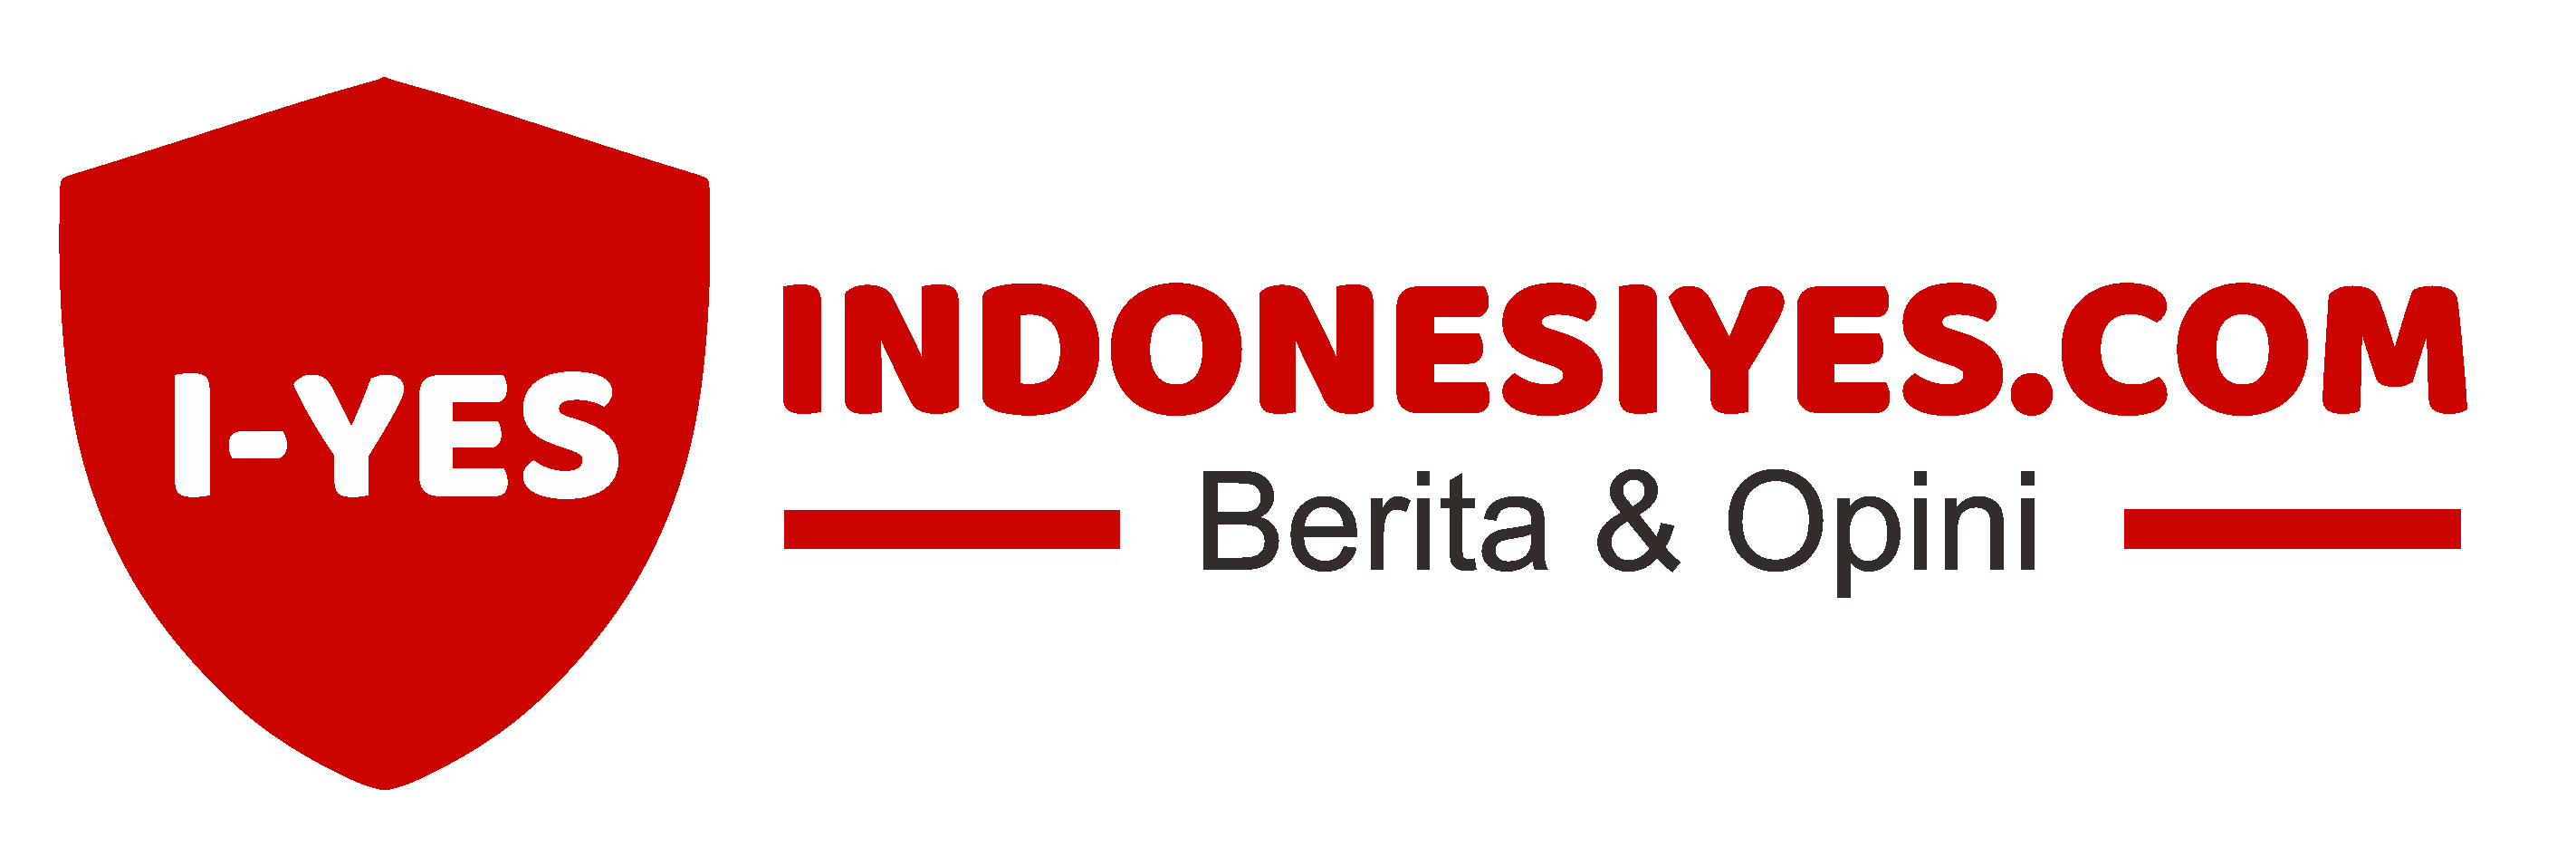 Indonesiyes